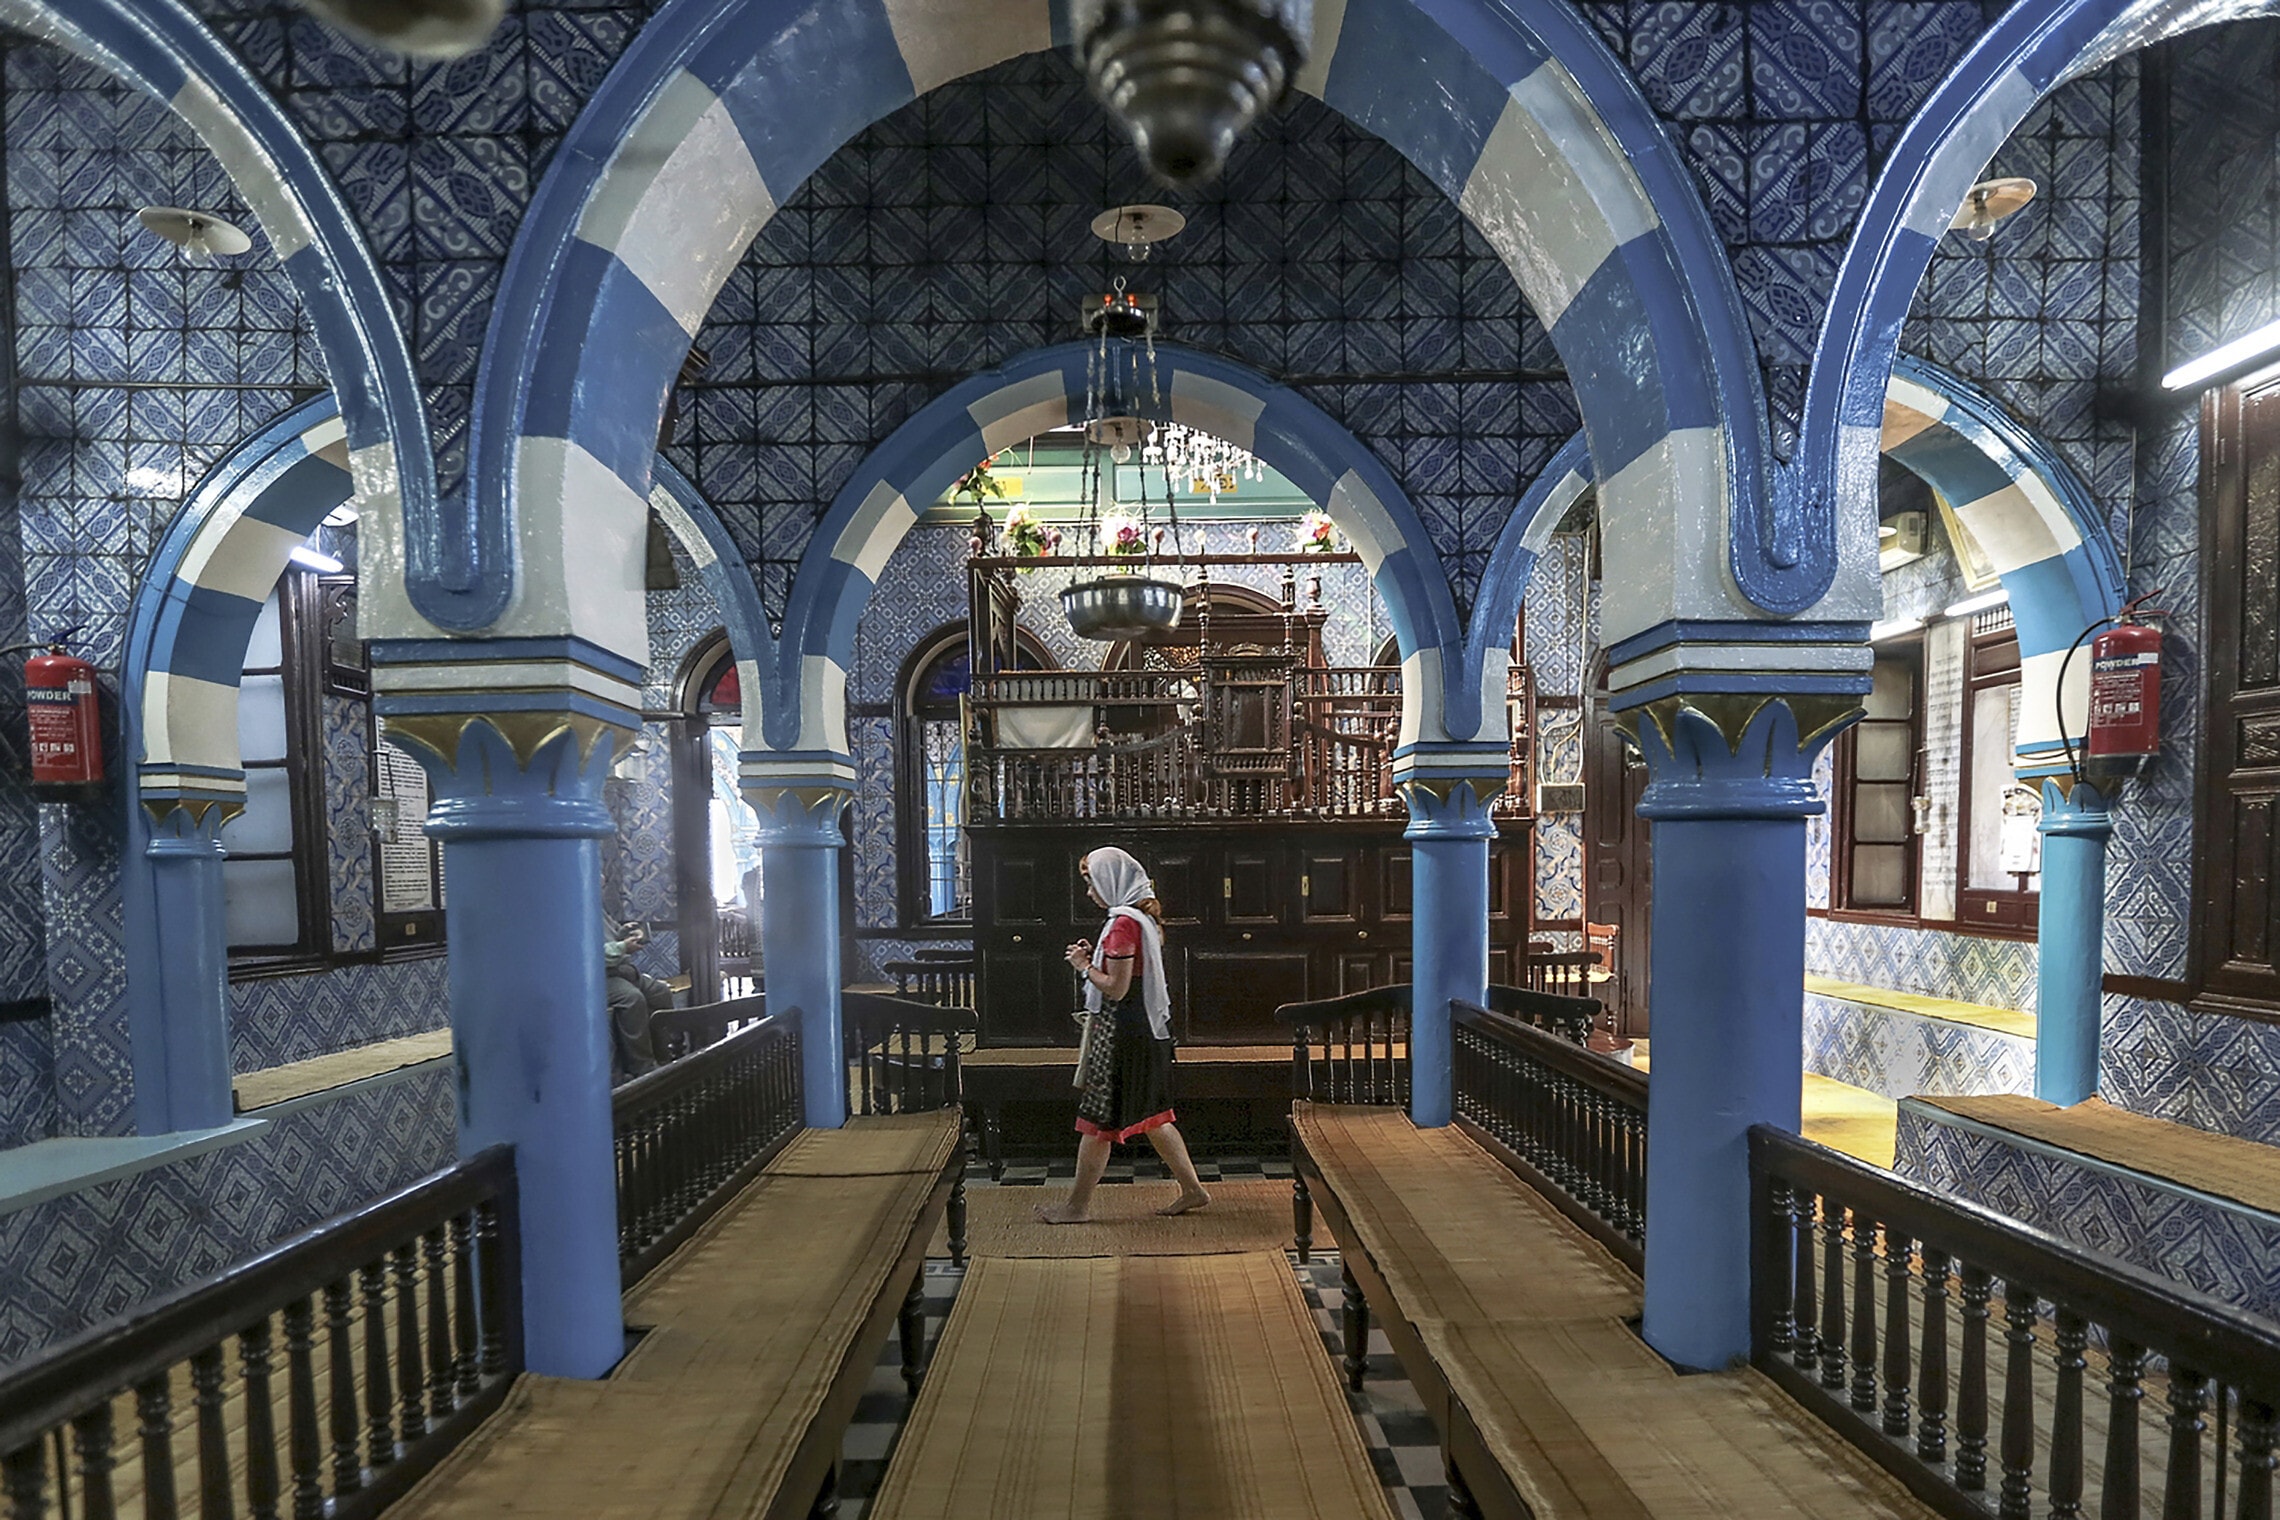 בית הכנסת אלגריבה באי ג&#039;רבה בתוניסיה &#8211; בית הכנסת העתיק ביותר באפריקה (צילום ארכיון) (צילום: AP Photo/Mosa&#039;ab Elshamy)